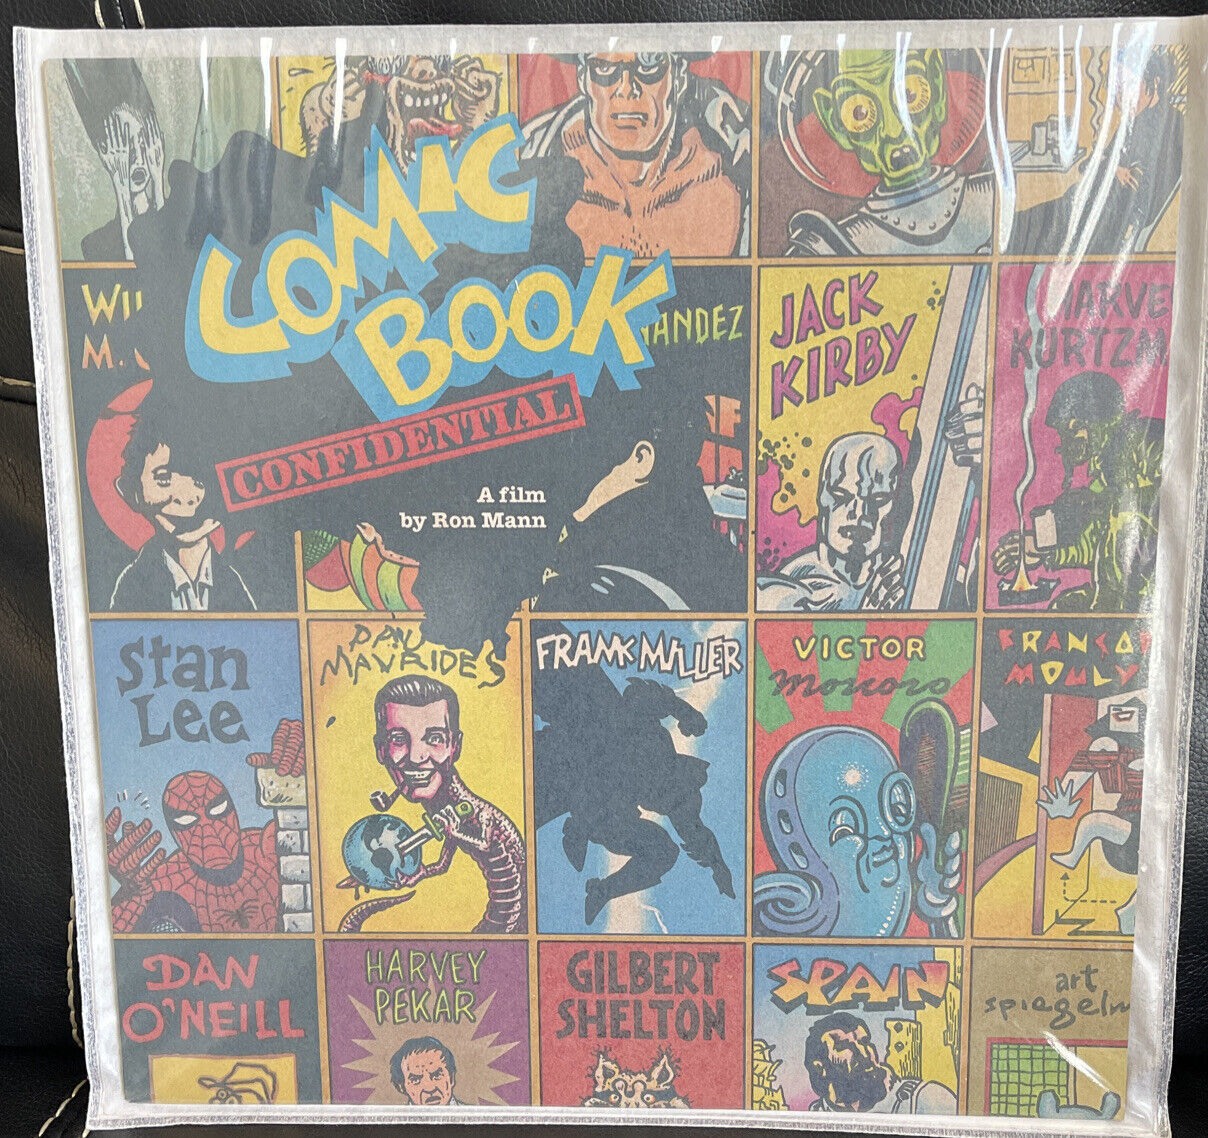 Comic Book Confidential (Laserdisc)